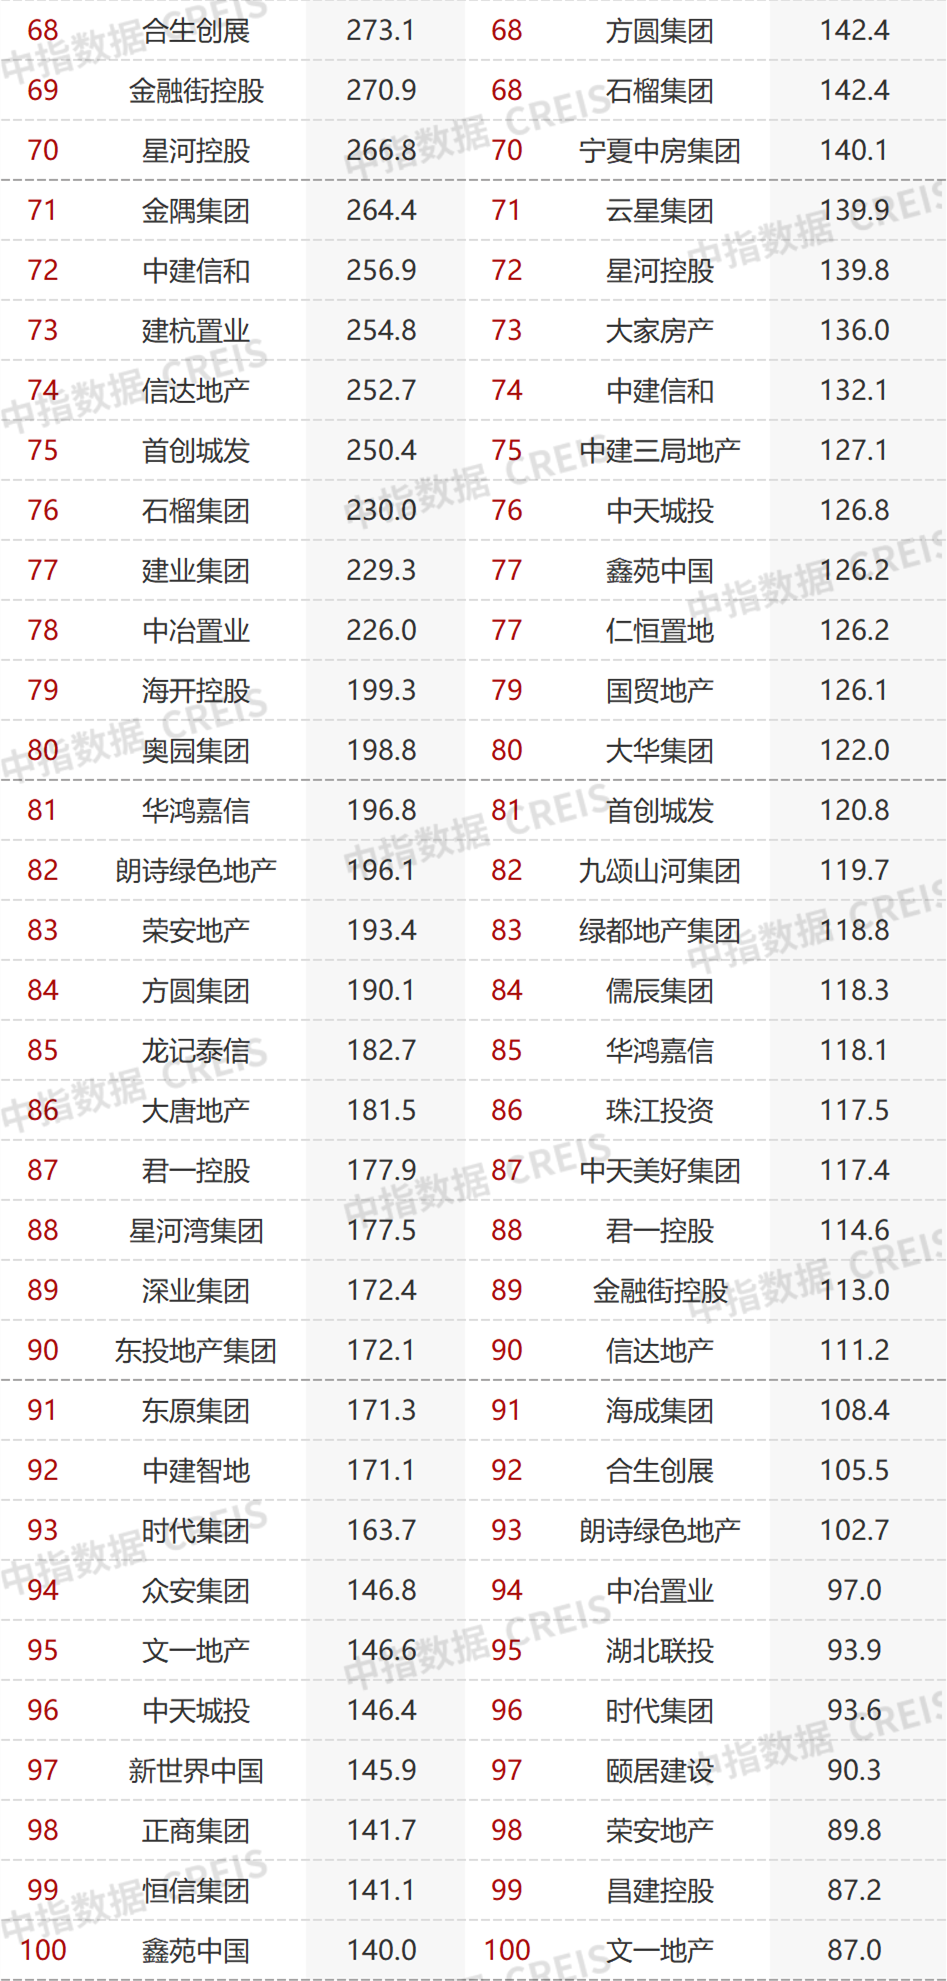 2022年1-11月中国房企销售业绩排行榜发布 TOP100房企销售额同比下降42.1%